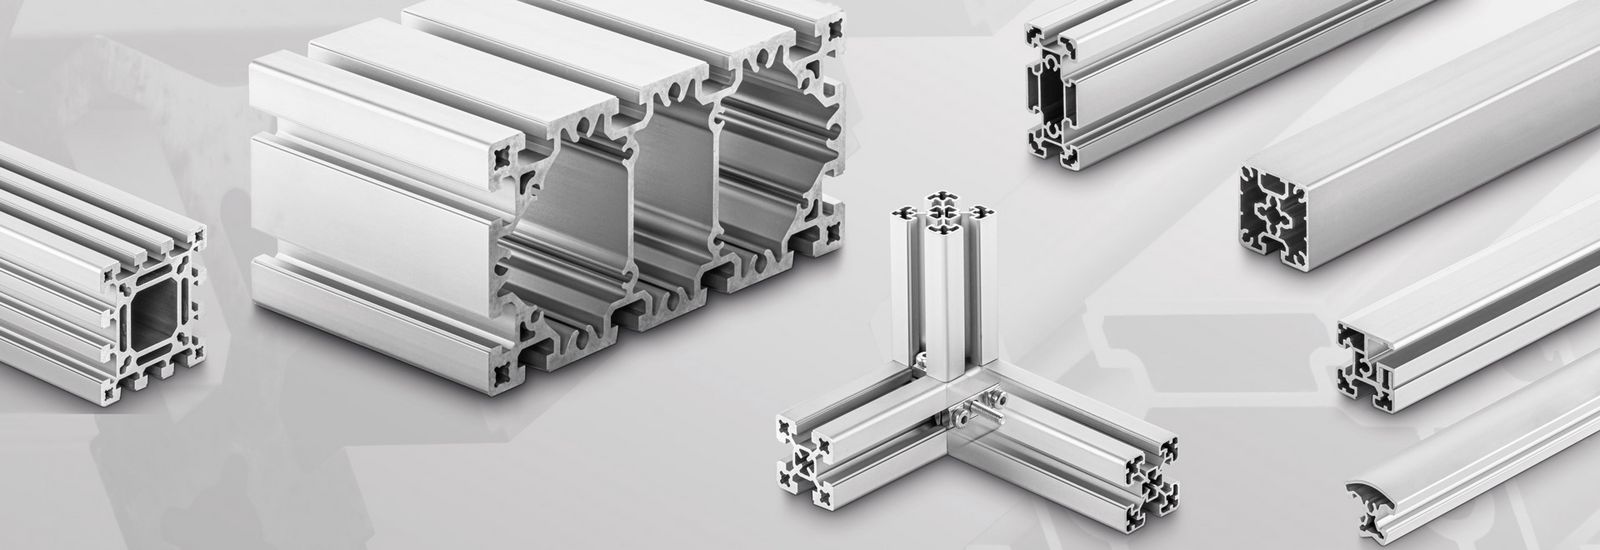  Perfil de aluminio industrial 4040N2 estándar europeo 4040N2,  perfil de aleación de aluminio ranurado de doble cara de 40x40 de doble  cara (longitud de la guía: 17.717 in/plata) : Herramientas y